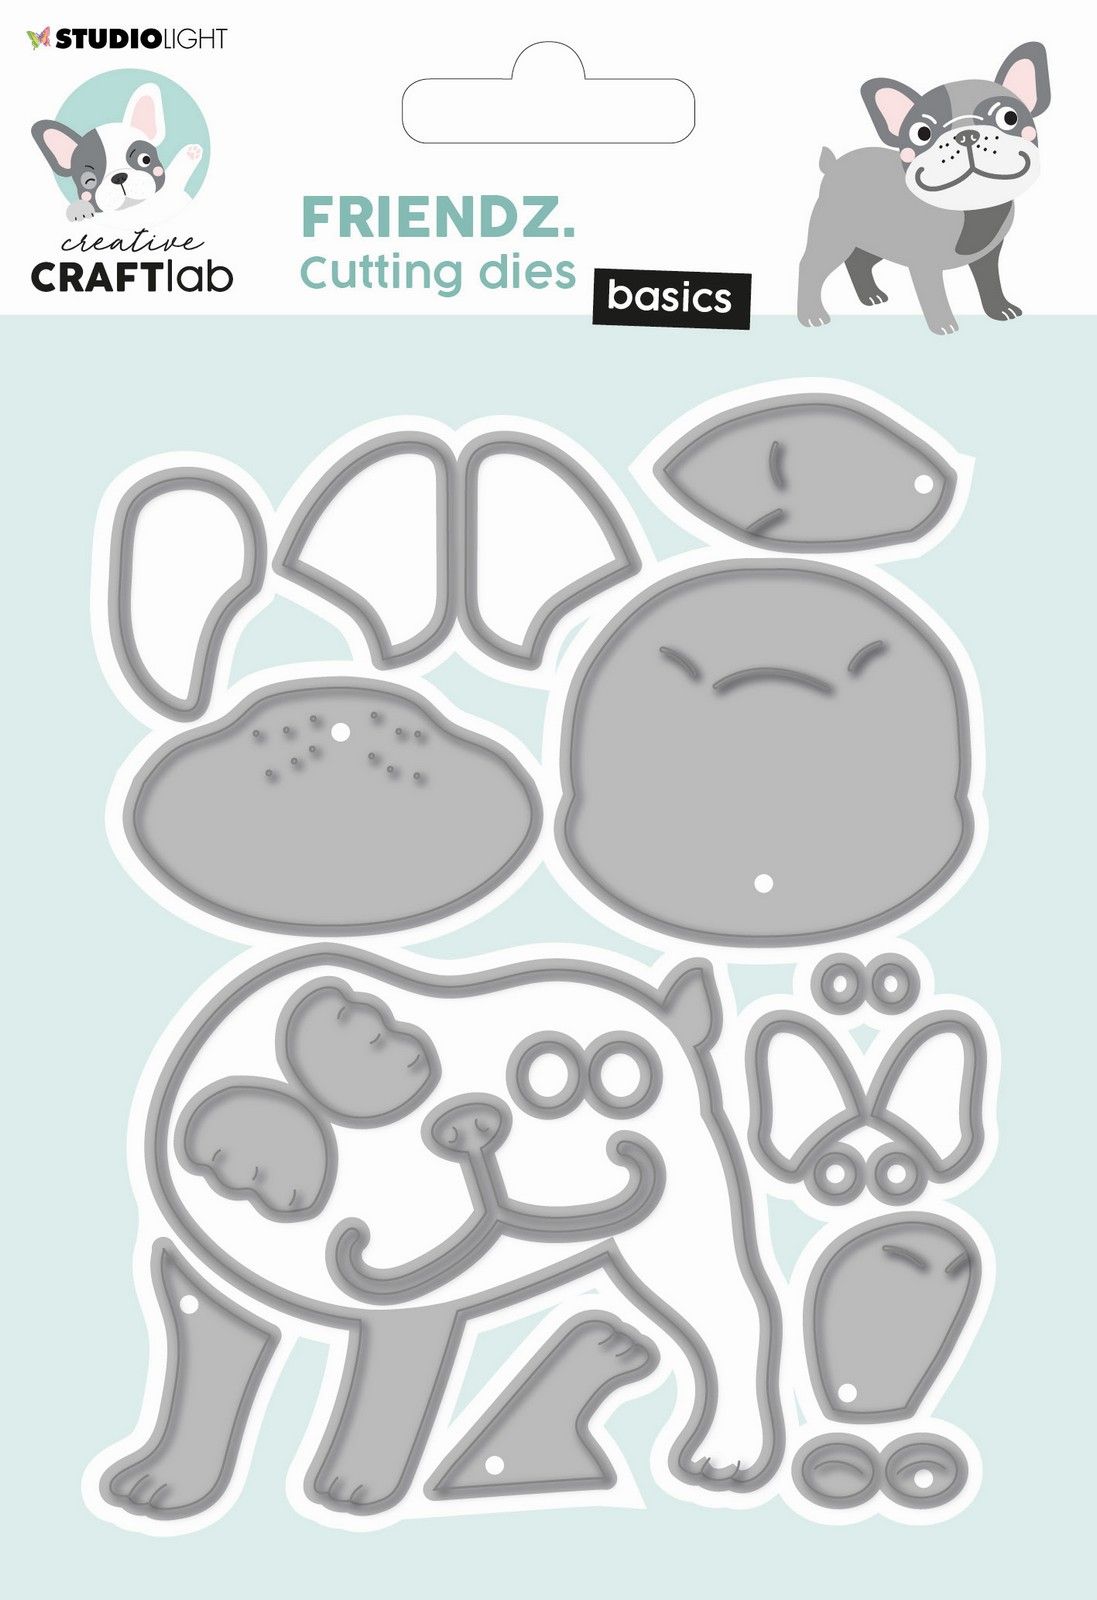 Creative Craftlab • Friendz fustelle da taglio Buddy